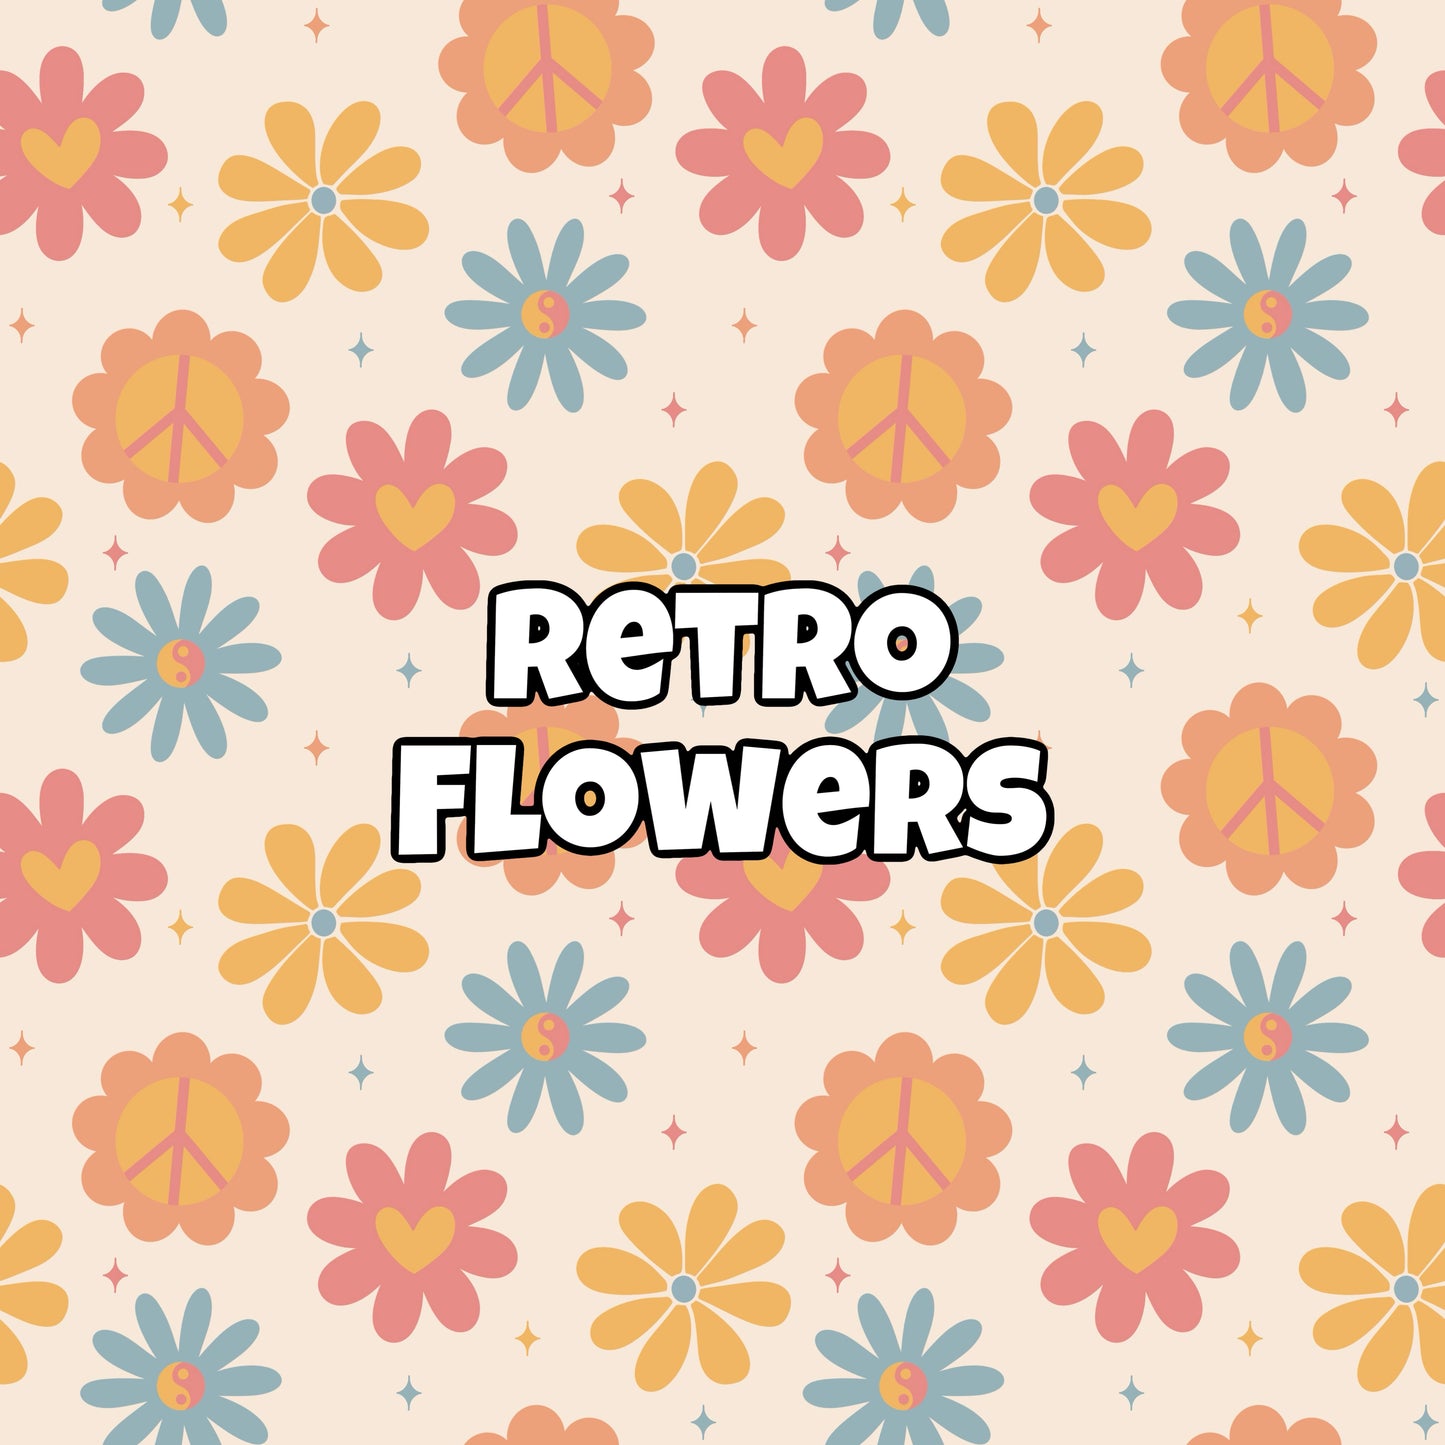 RETRO FLOWERS